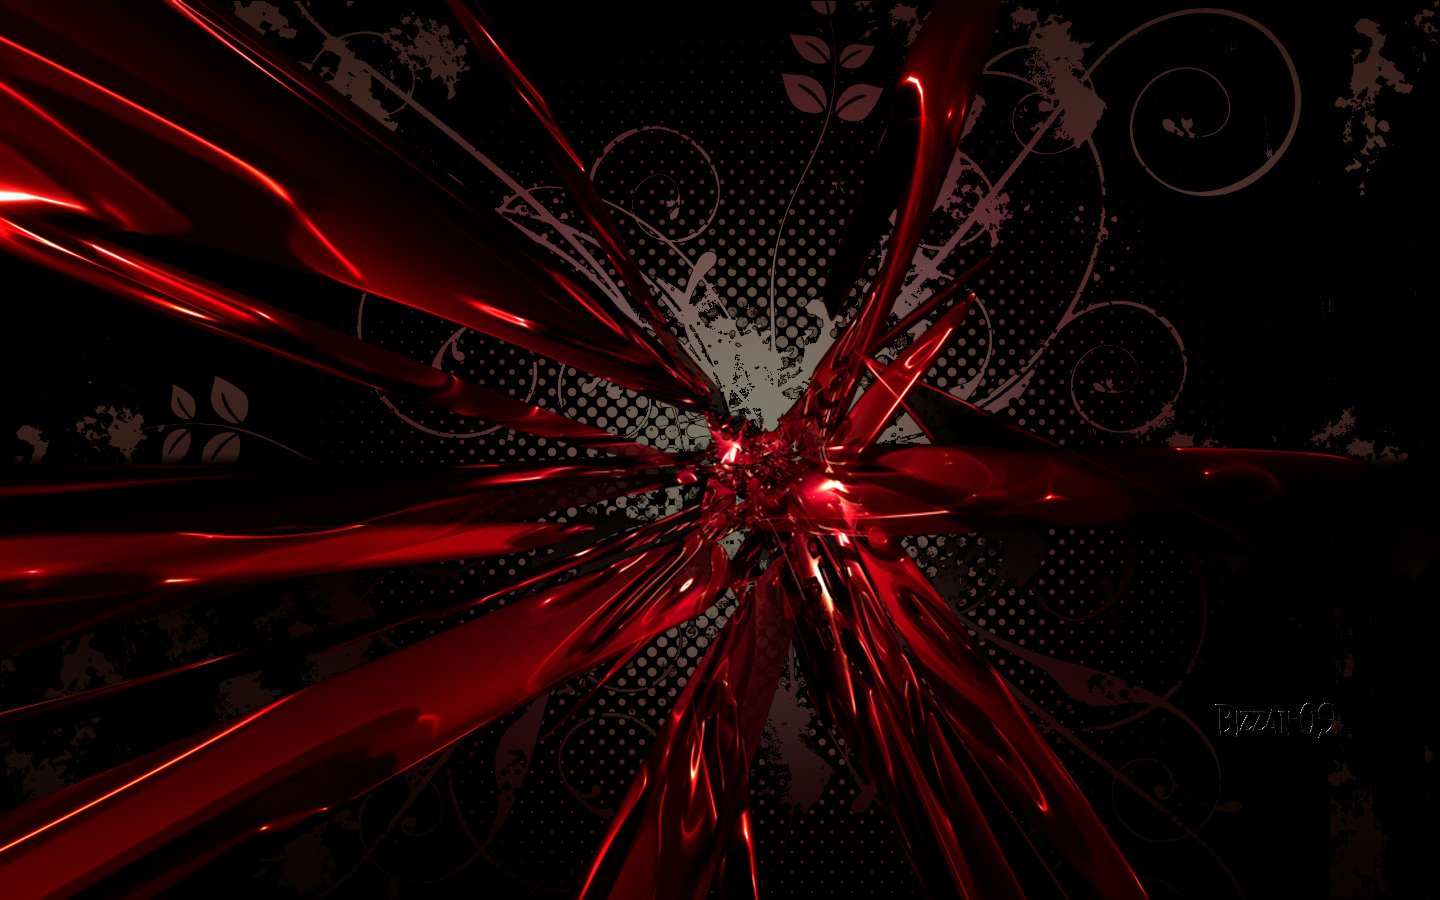 Red and Black 4K Wallpaper - WallpaperSafari